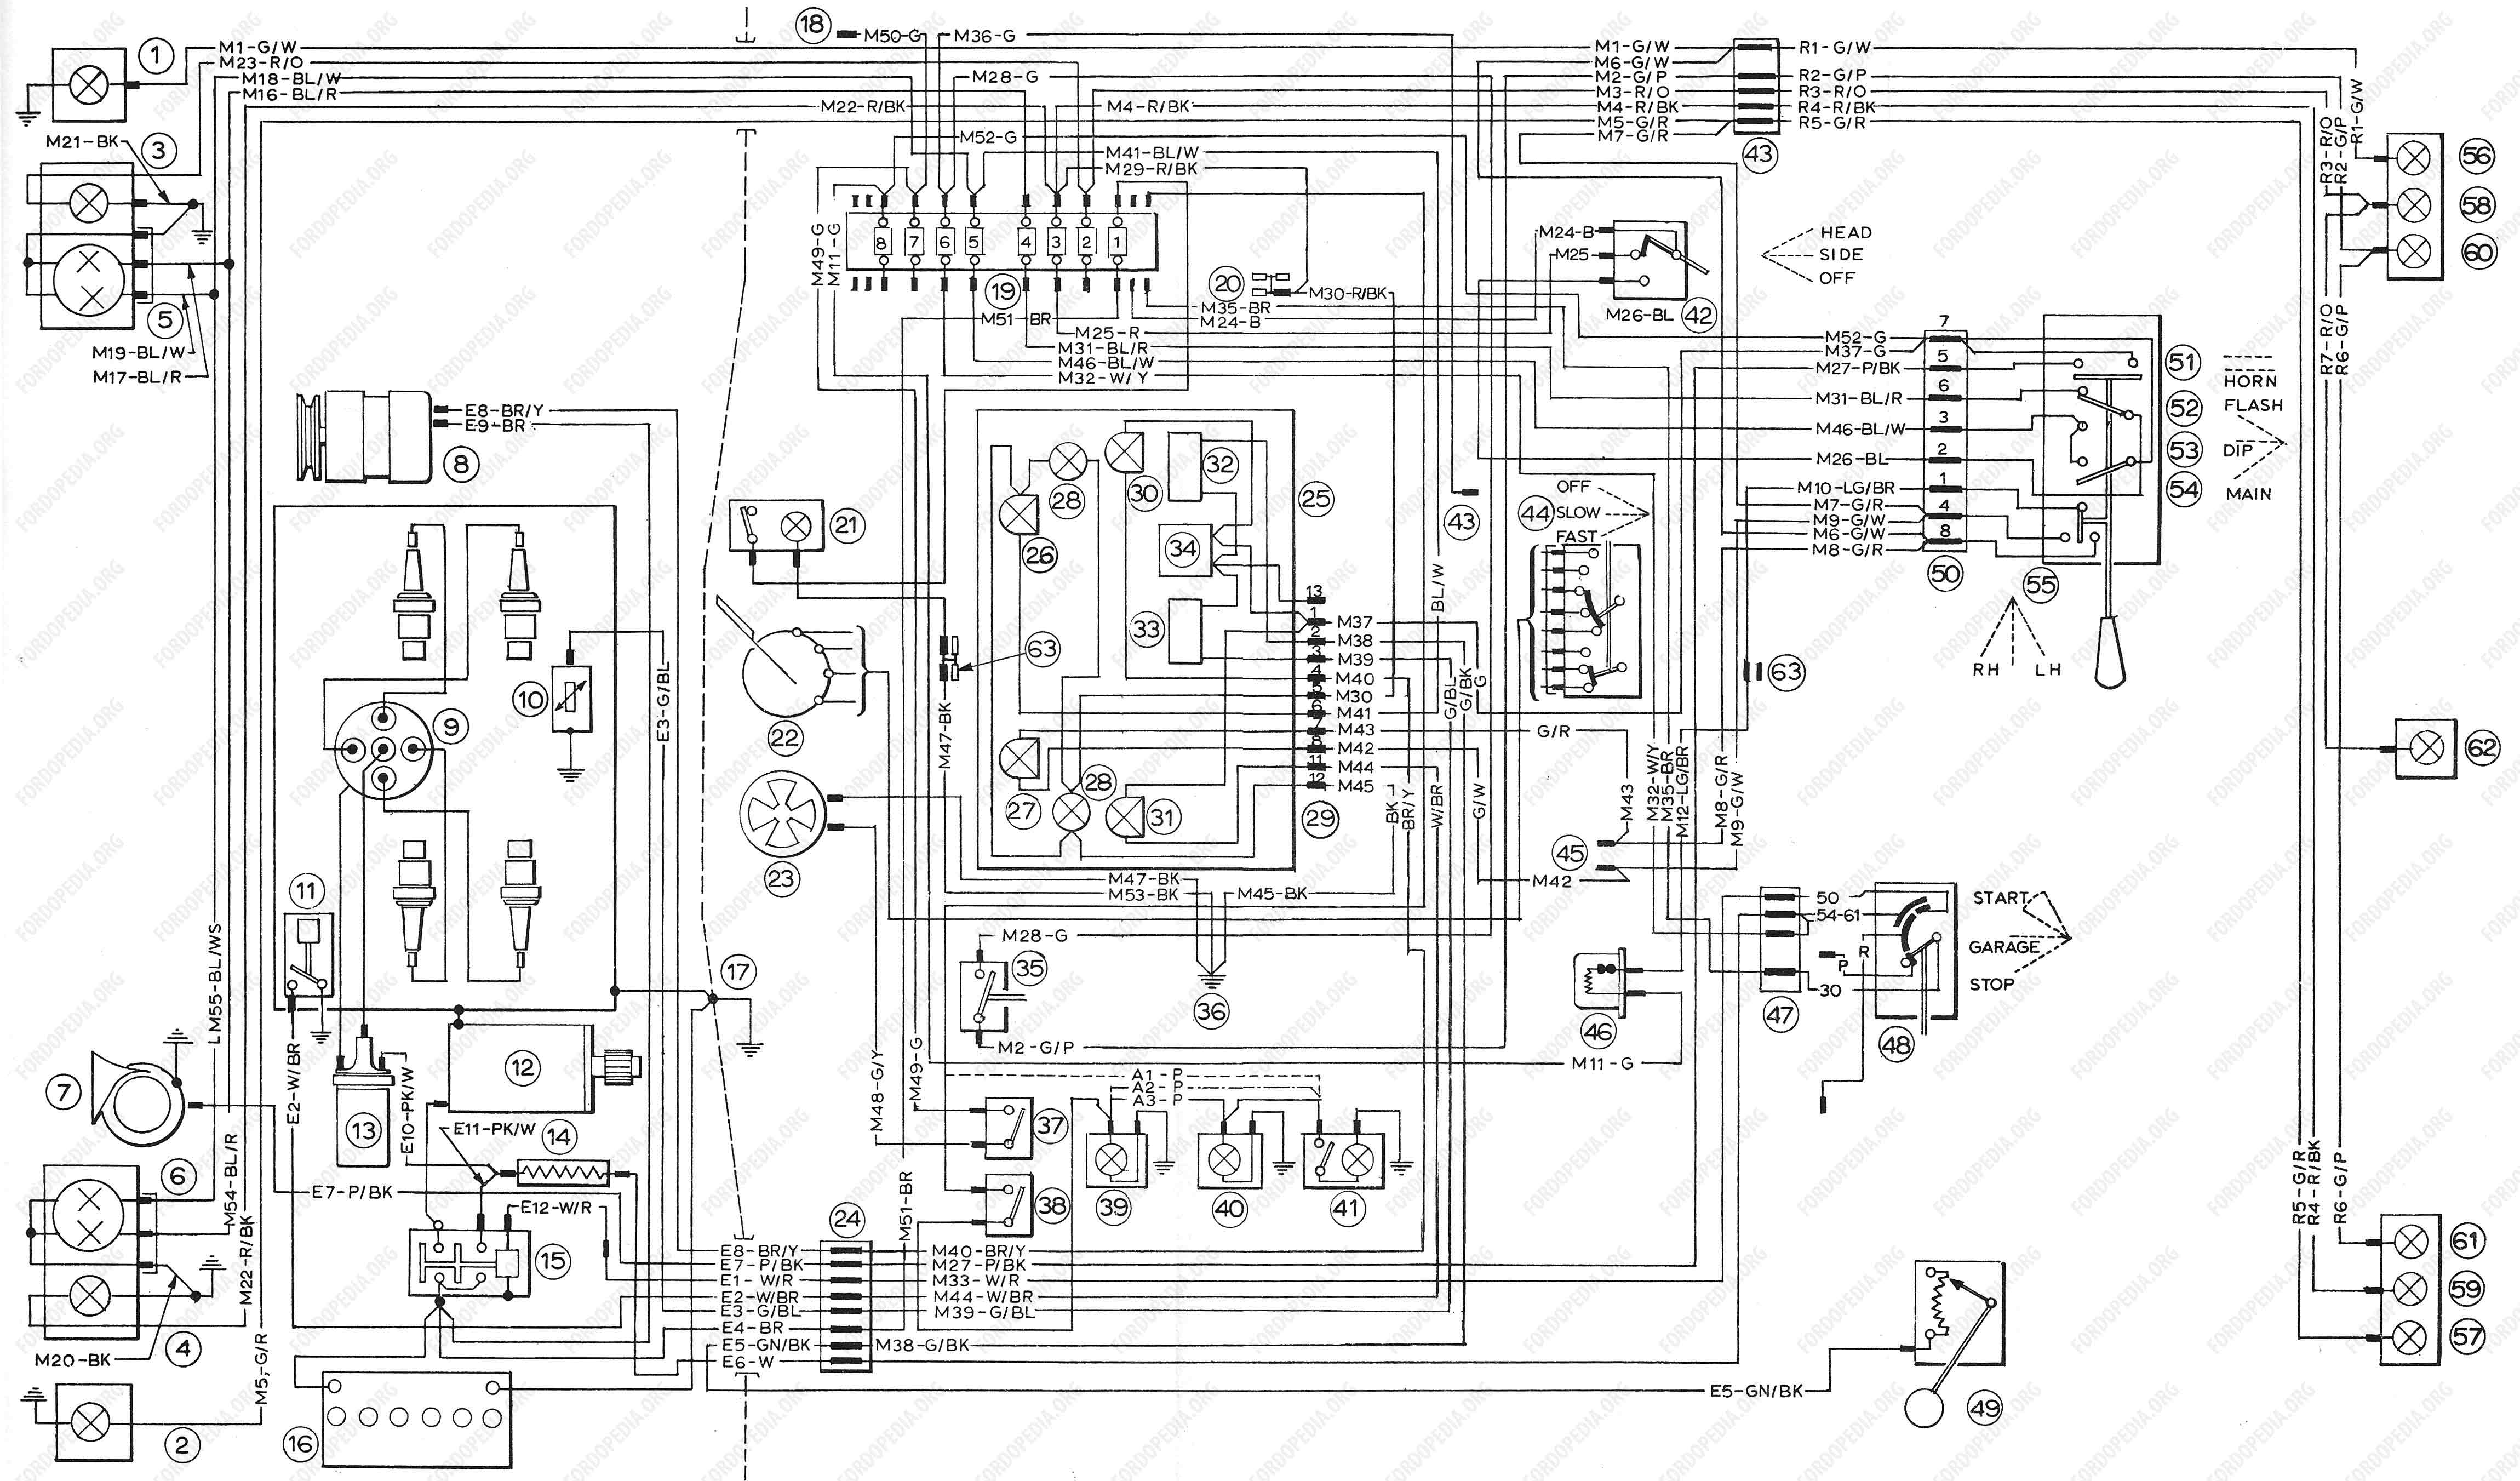 Ford transit van radio wiring diagram #6